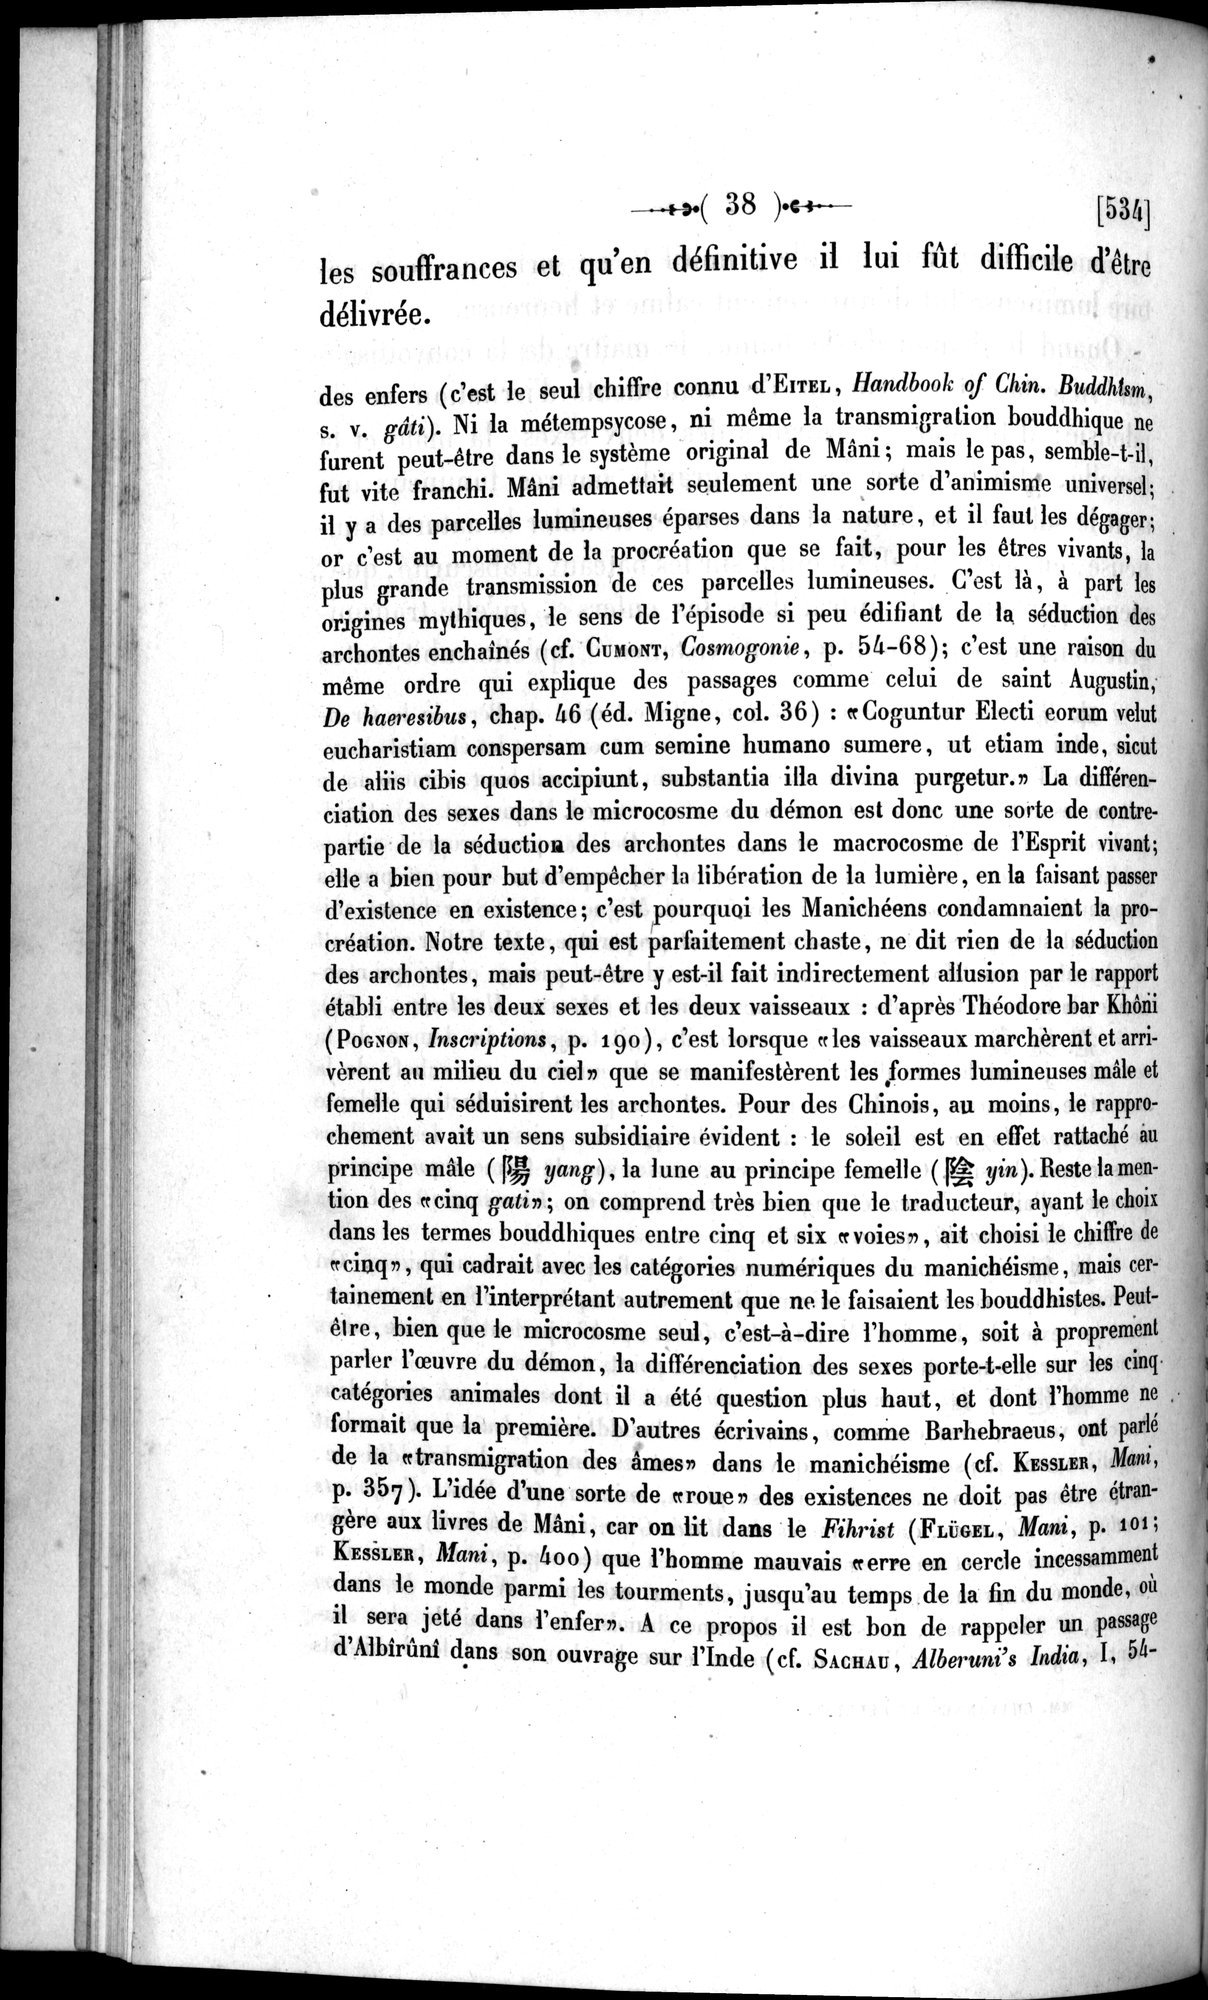 Un traité manichéen retrouvé en Chine : vol.1 / Page 48 (Grayscale High Resolution Image)